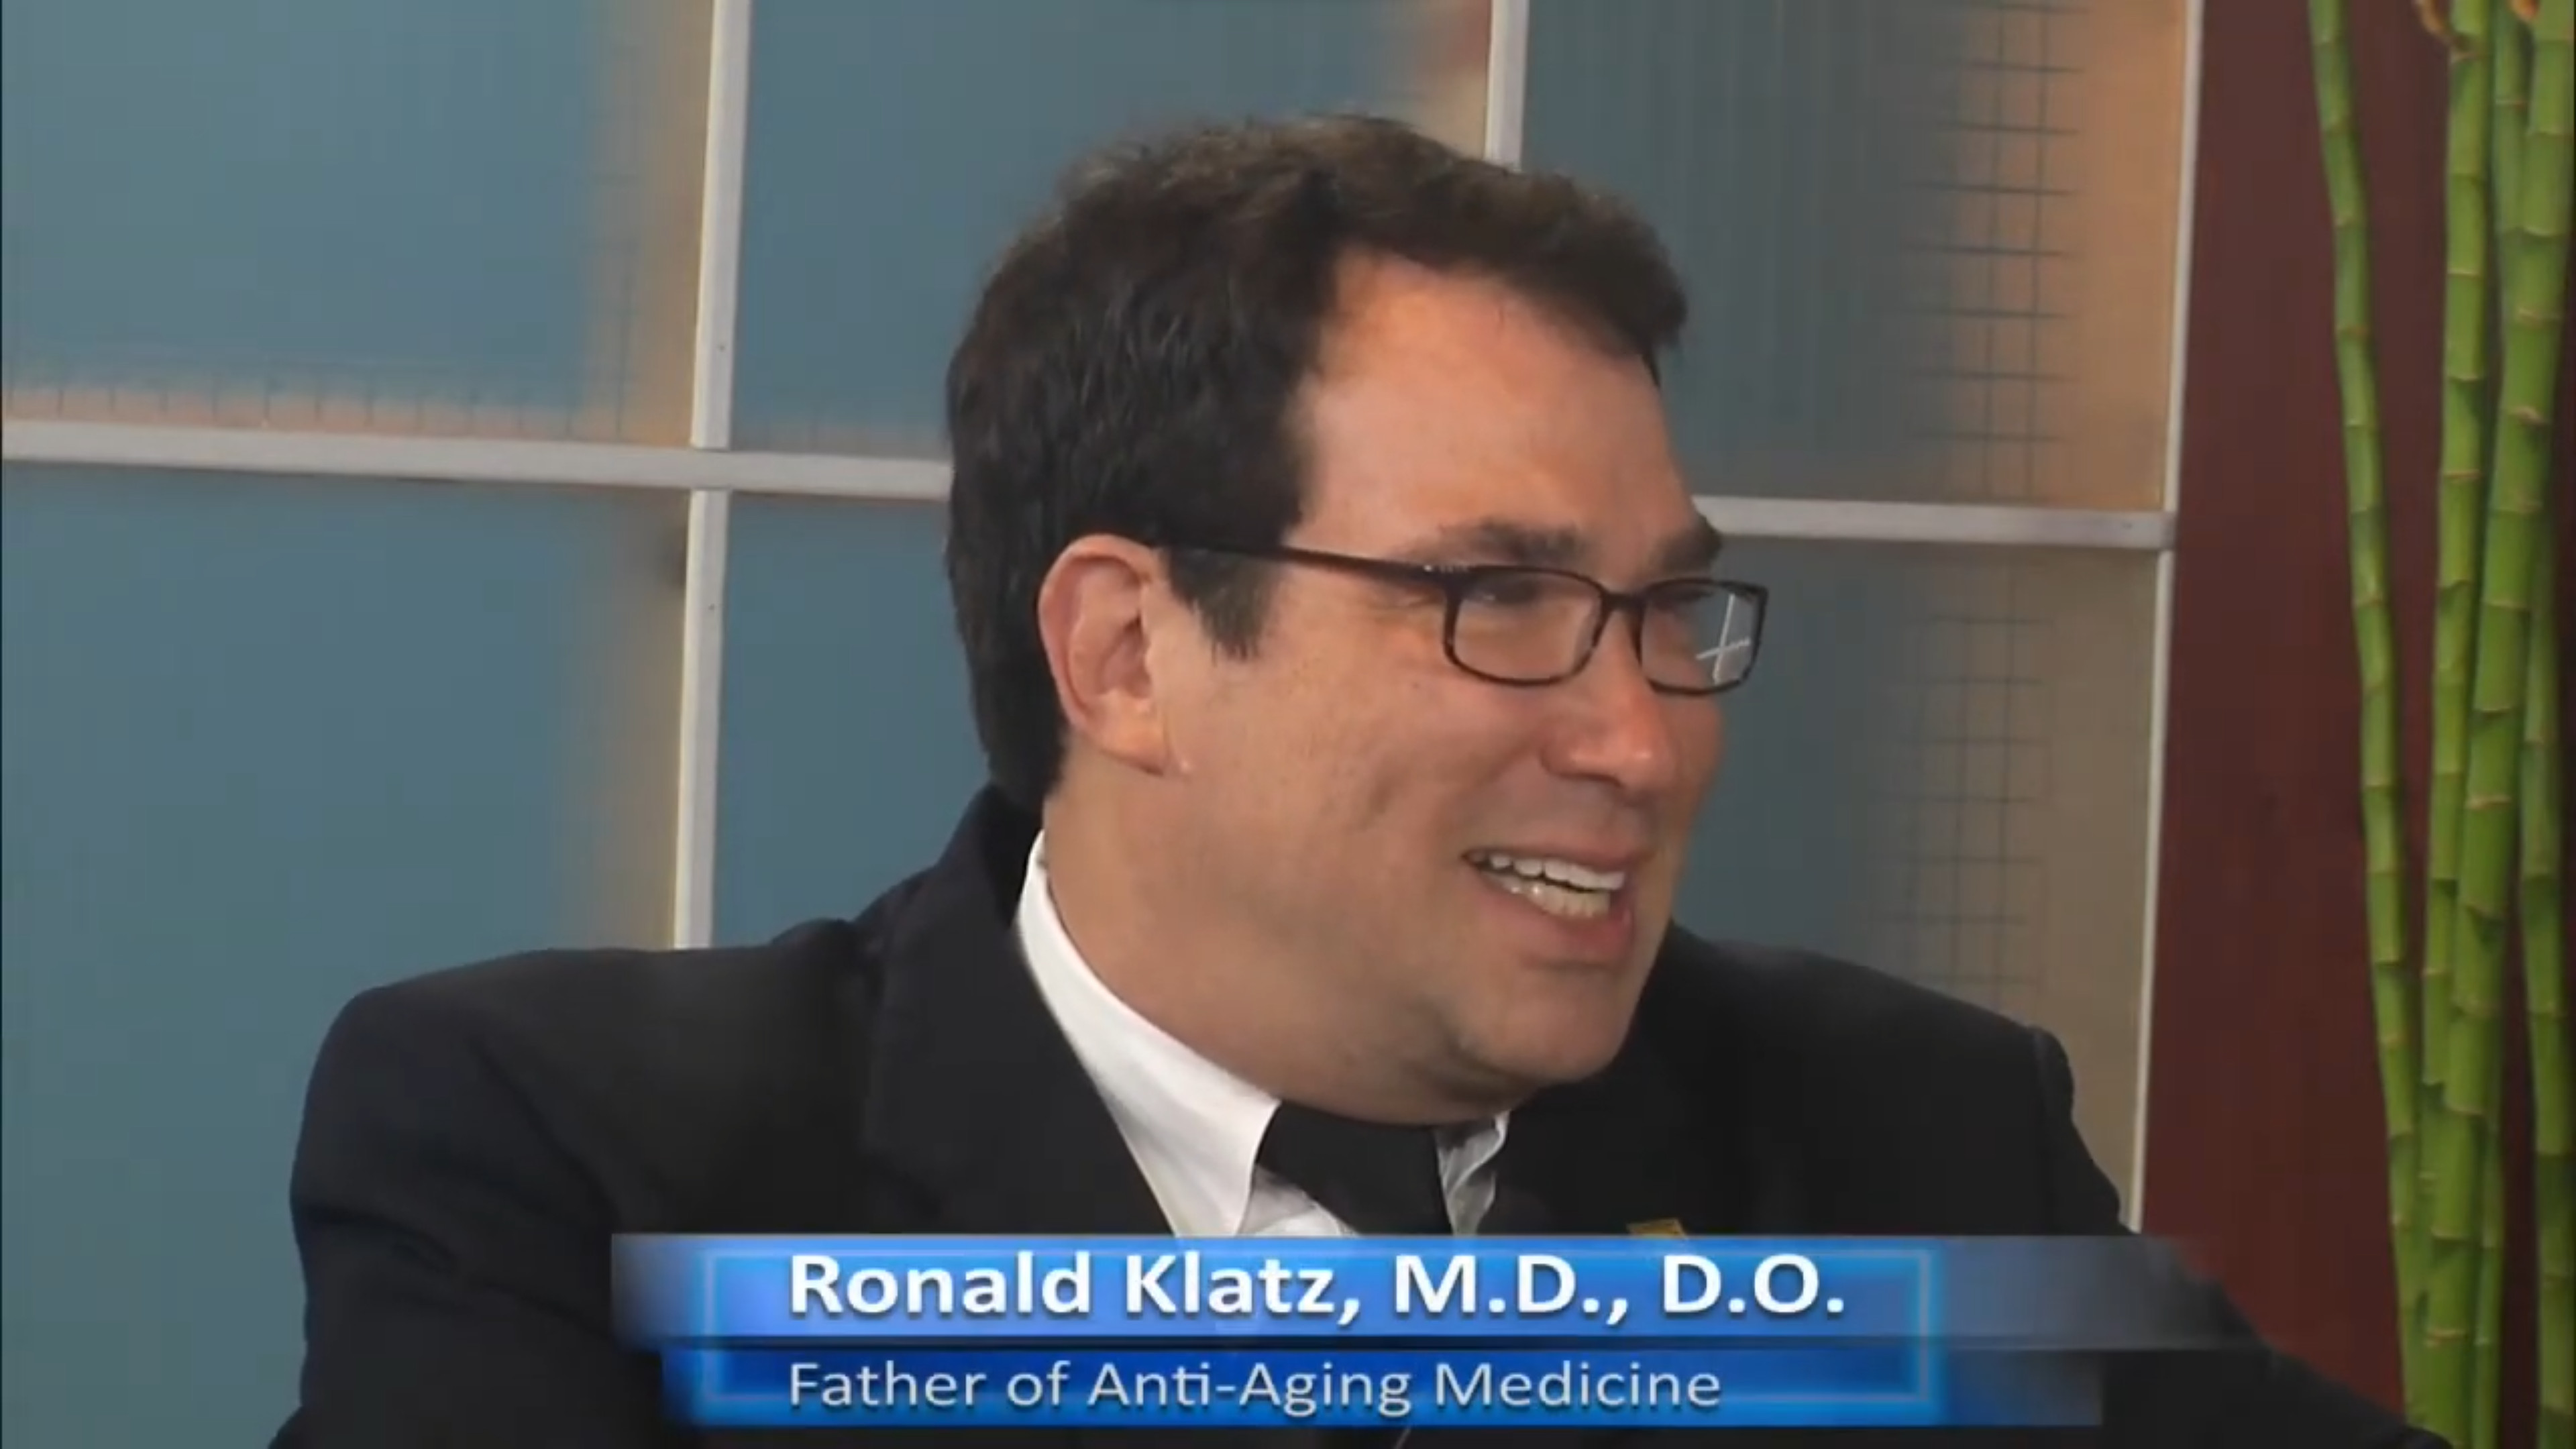 Dr. Klatz